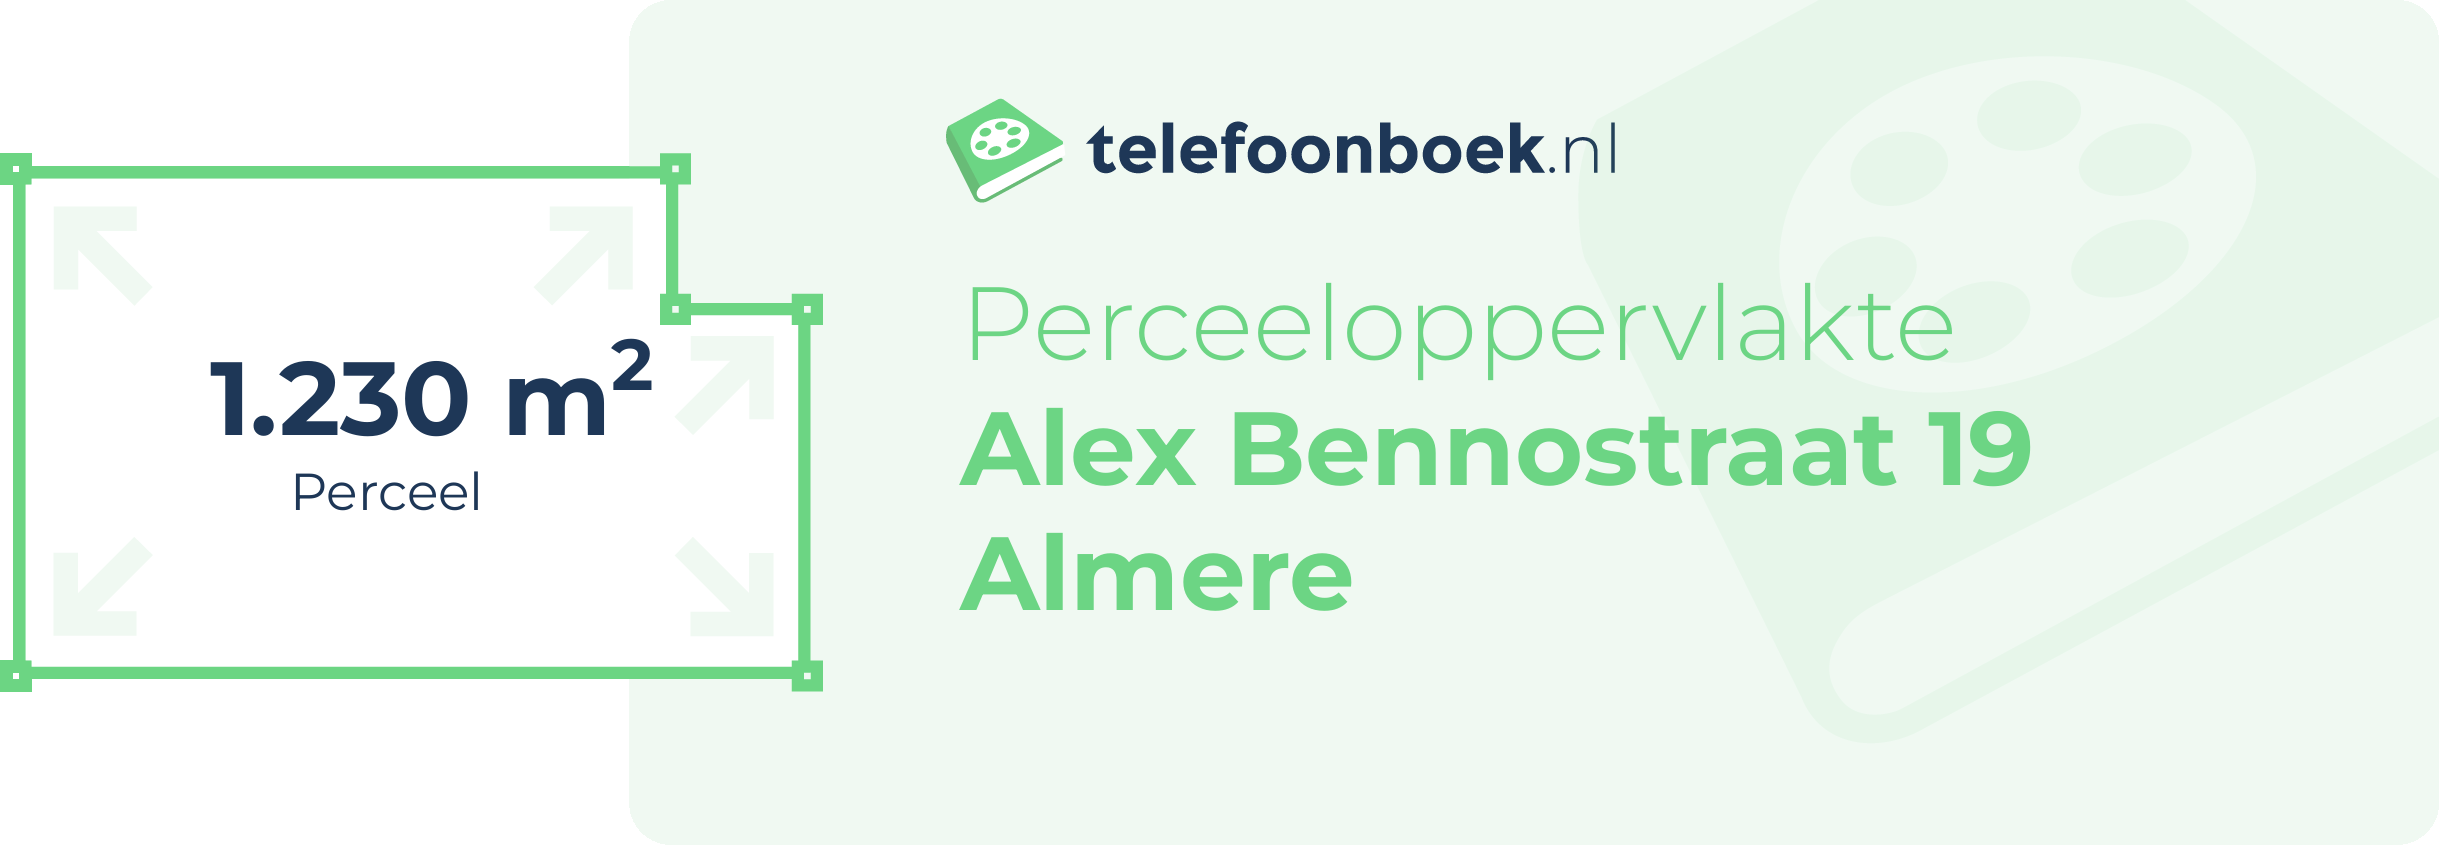 Perceeloppervlakte Alex Bennostraat 19 Almere